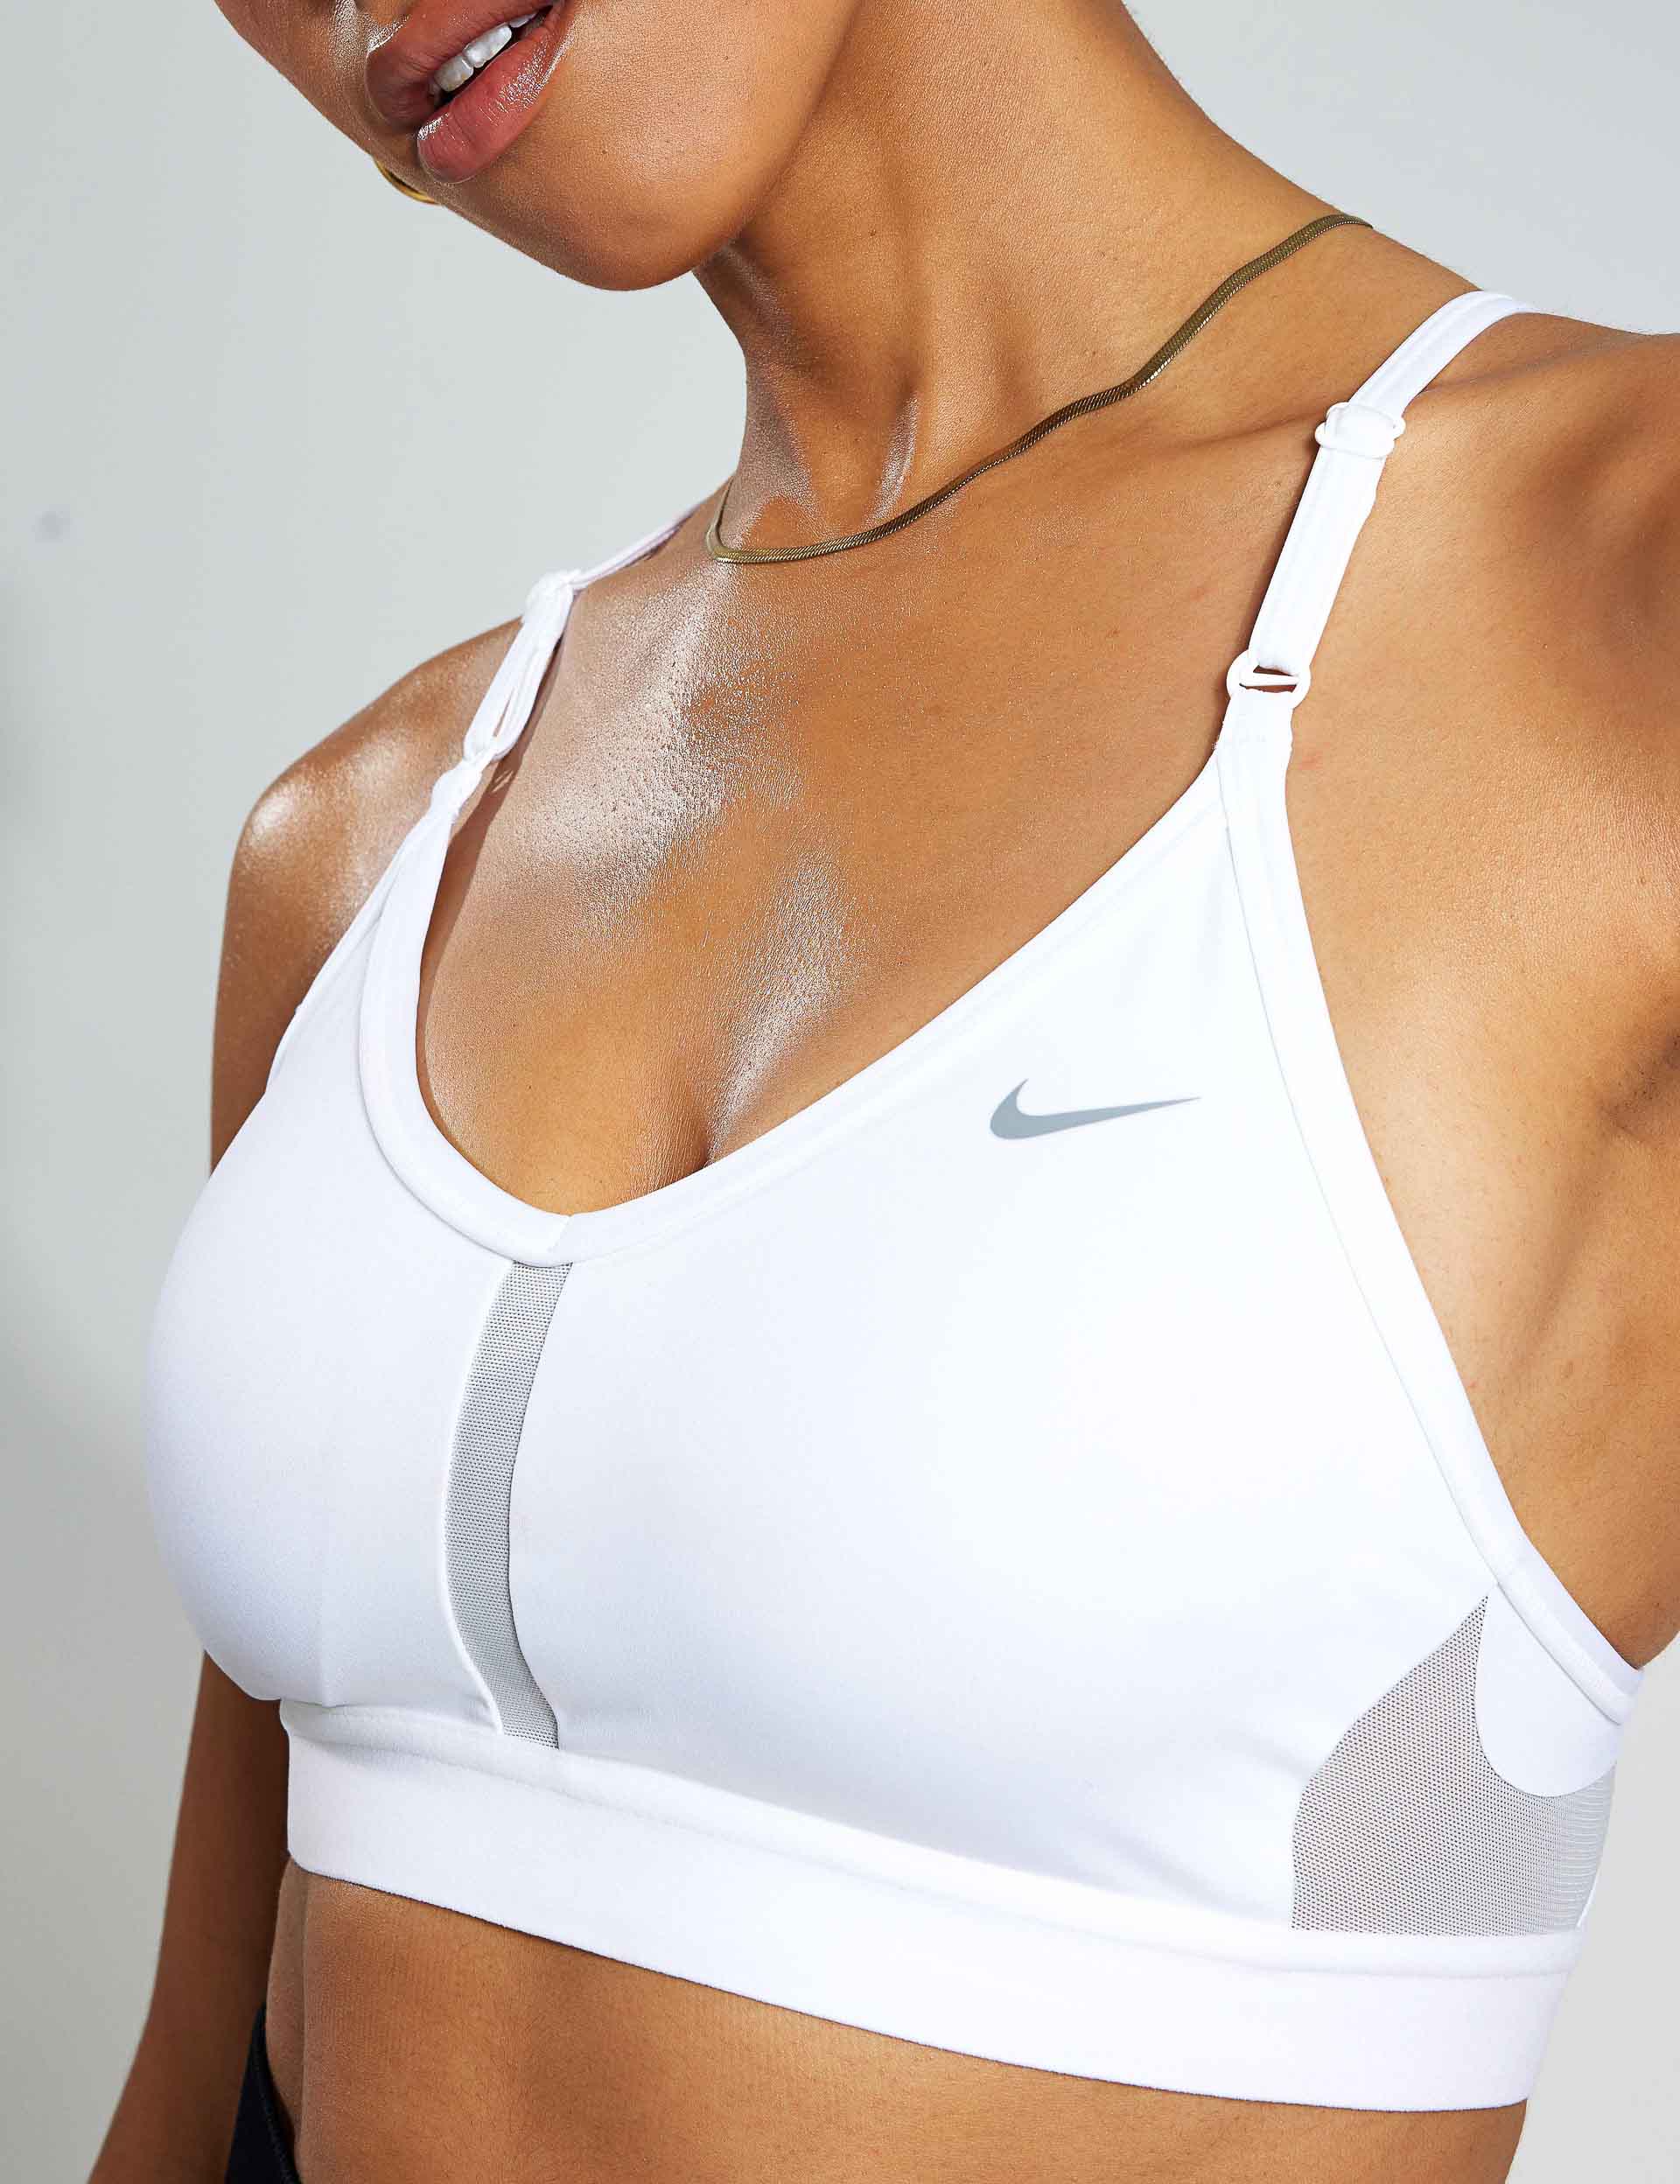 Nike Sports Bra Dri-FIT Swoosh - Bordeaux/White Woman